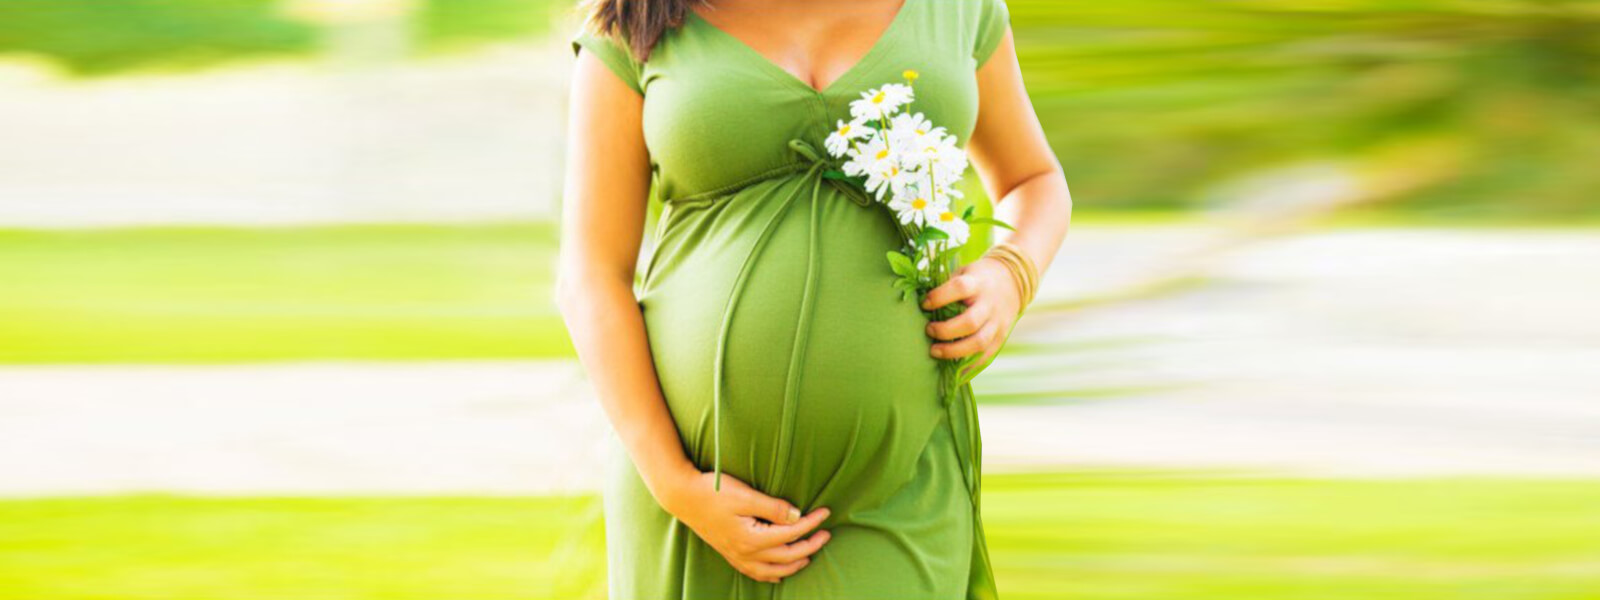 Oplev en duftende graviditet og nyd en aromatisk fødselsoplevelse med olier